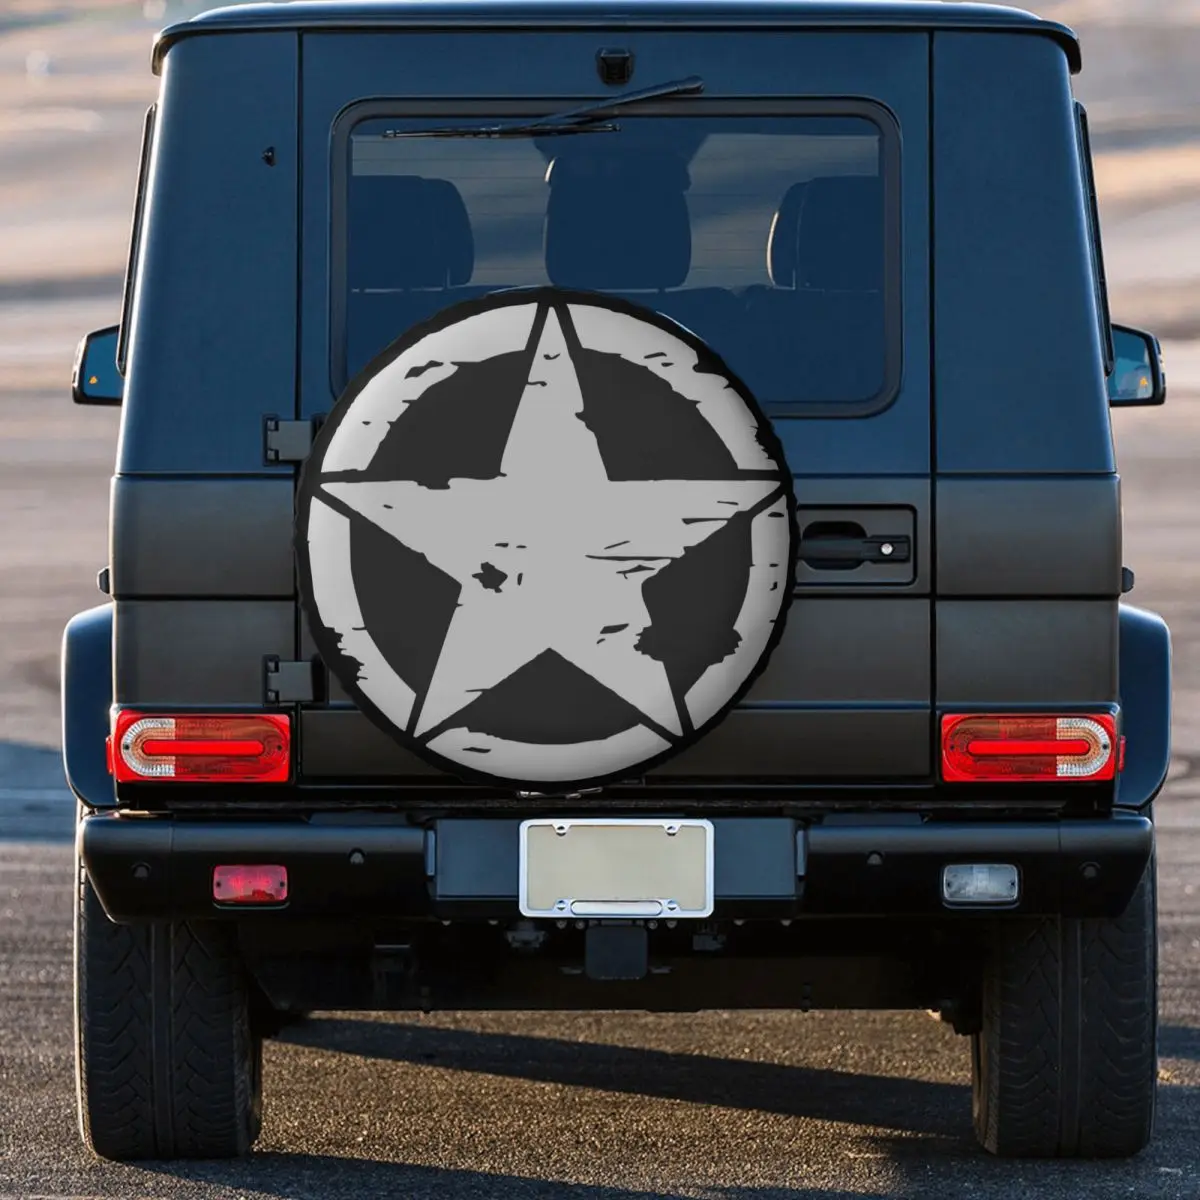 

Военная Тактическая Звездная крышка для запасных колес для Grand Cherokee, Jeep, RV, SUV, RV, Аксессуары для автомобилей 14, 15, 16, 17 дюймов